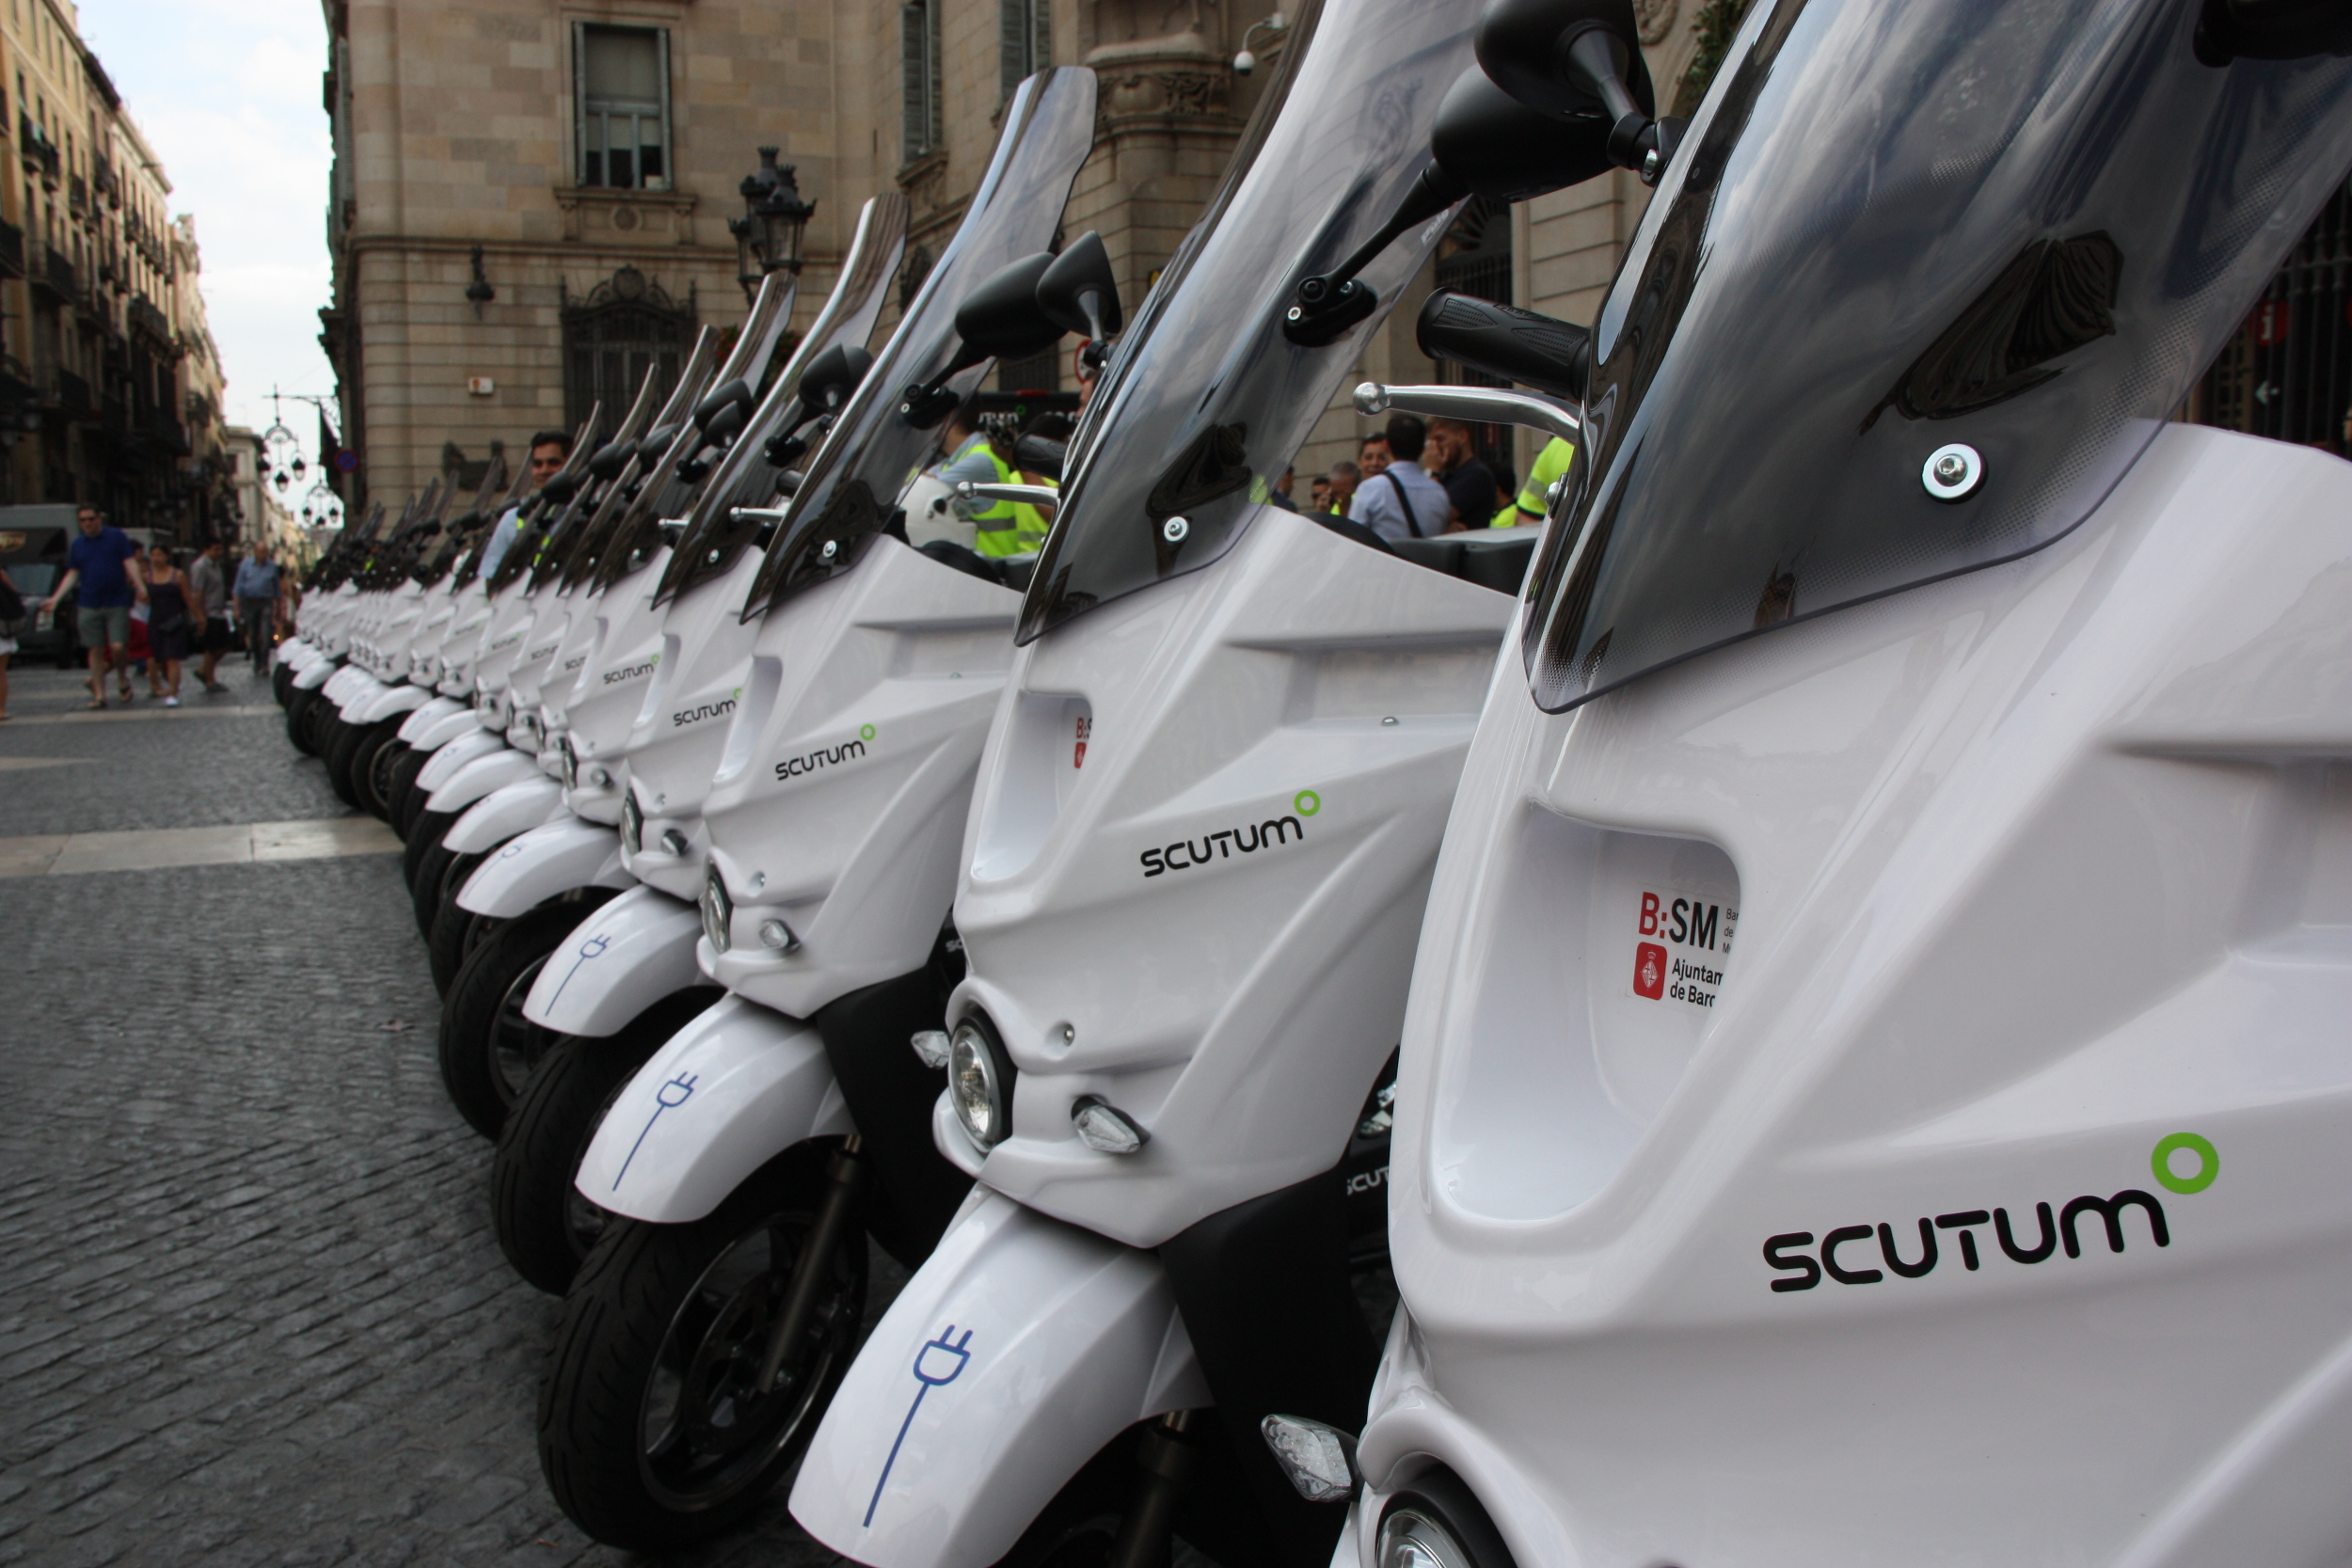 L'Ajuntament de Barcelona va comprar una flota de vint-i-cinc motocicletes elèctriques el 2016